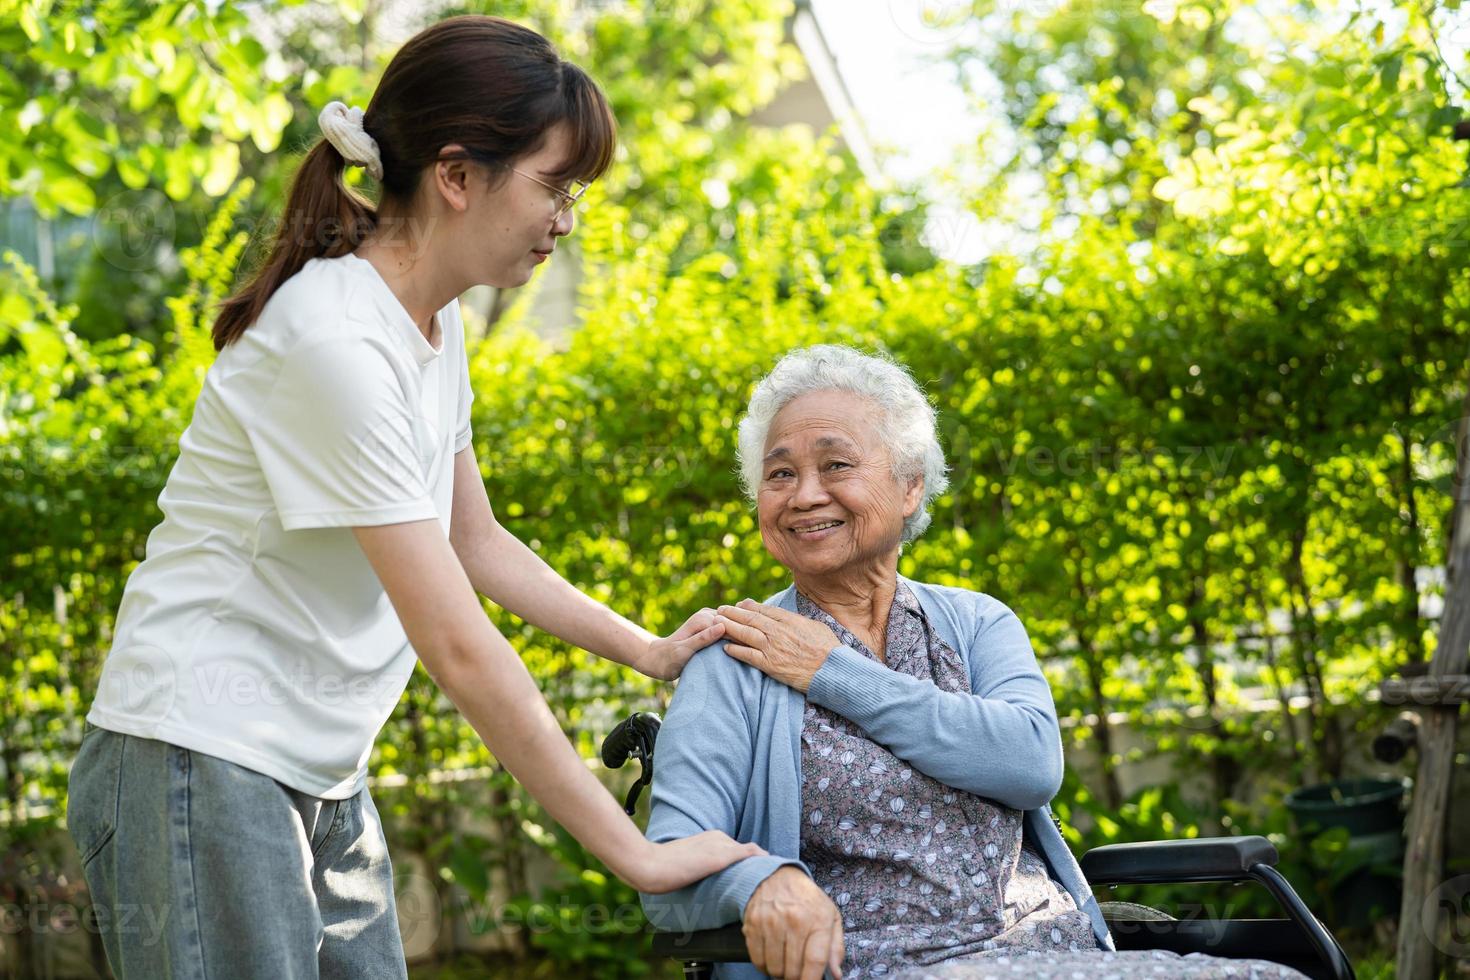 pflegekraft hilfe und pflege asiatische seniorin oder ältere alte dame patientin sitzt im rollstuhl im park, gesundes starkes medizinisches konzept. foto